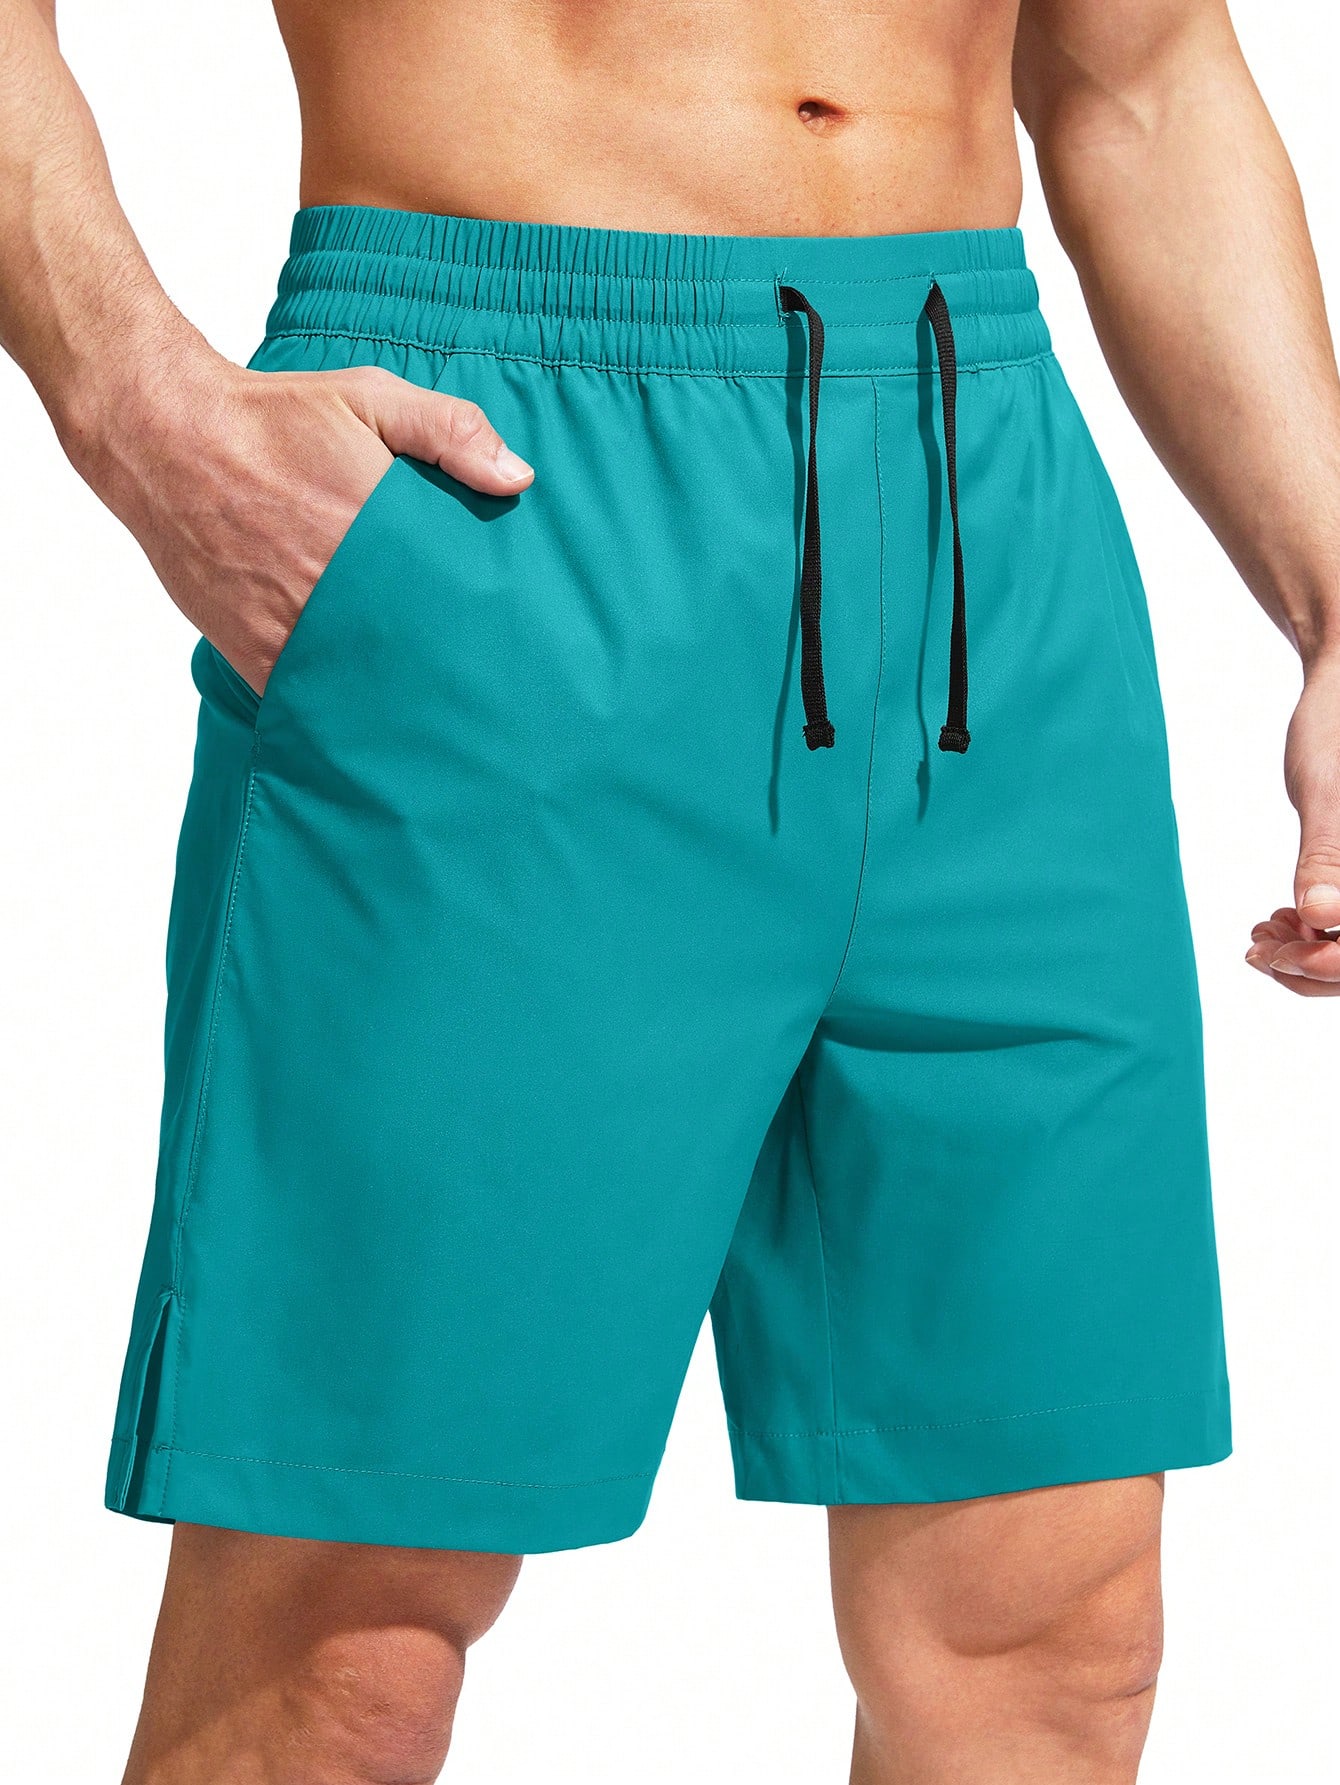 G Gradual G Gradual Мужские плавки Быстросохнущий купальный костюм Пляжные шорты для мужчин с карманами на молнии и сетчатой ​​подкладкой Серые шорты, мятно-зеленый